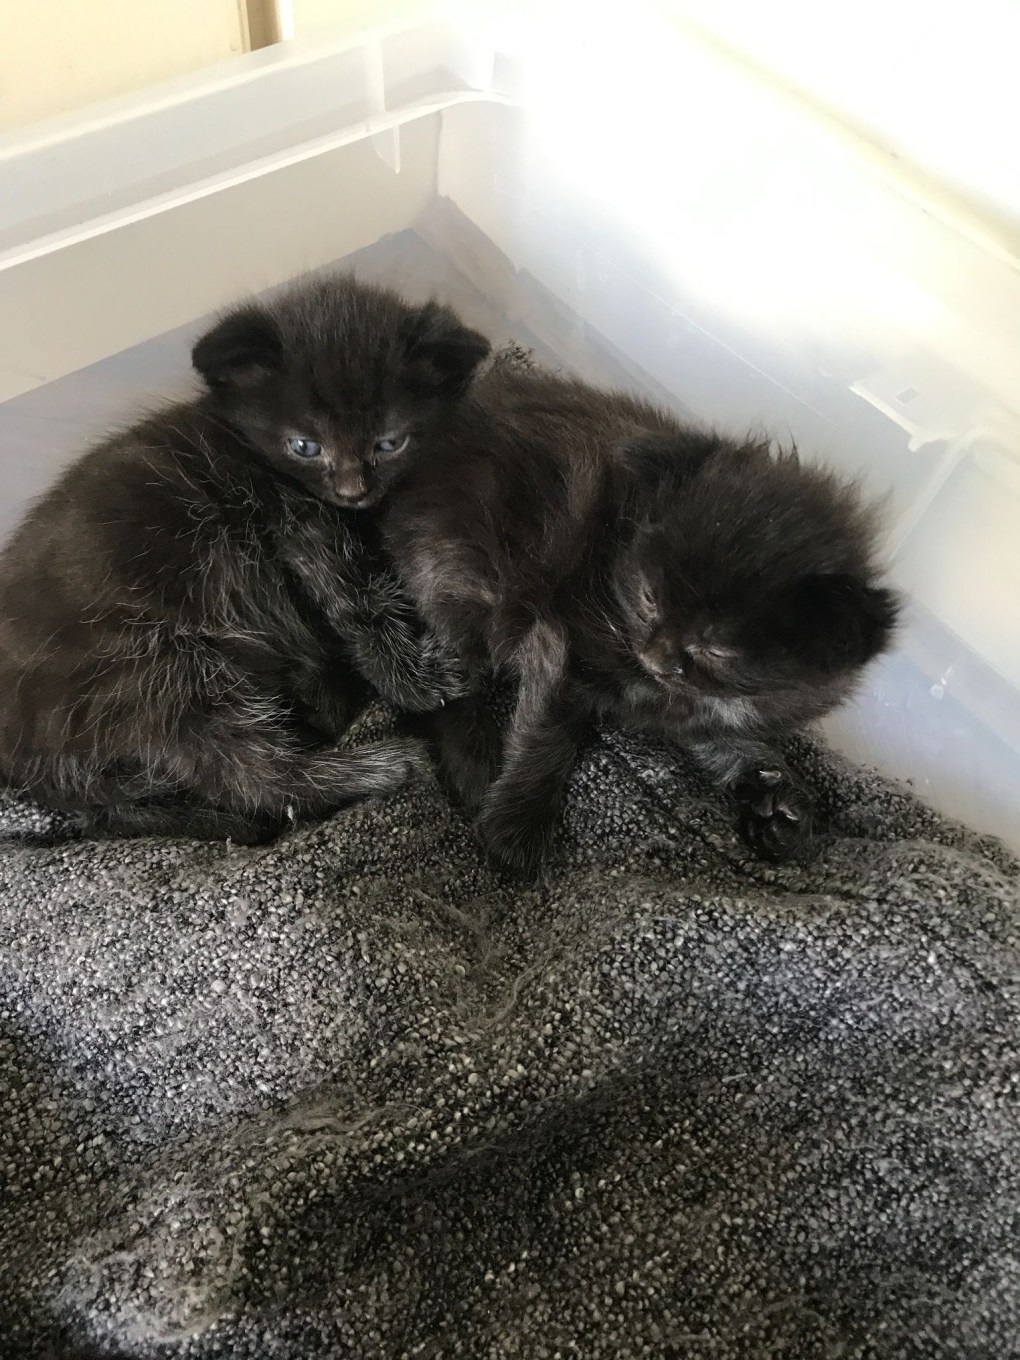 Trio of Kittens Dumped in Shoebox